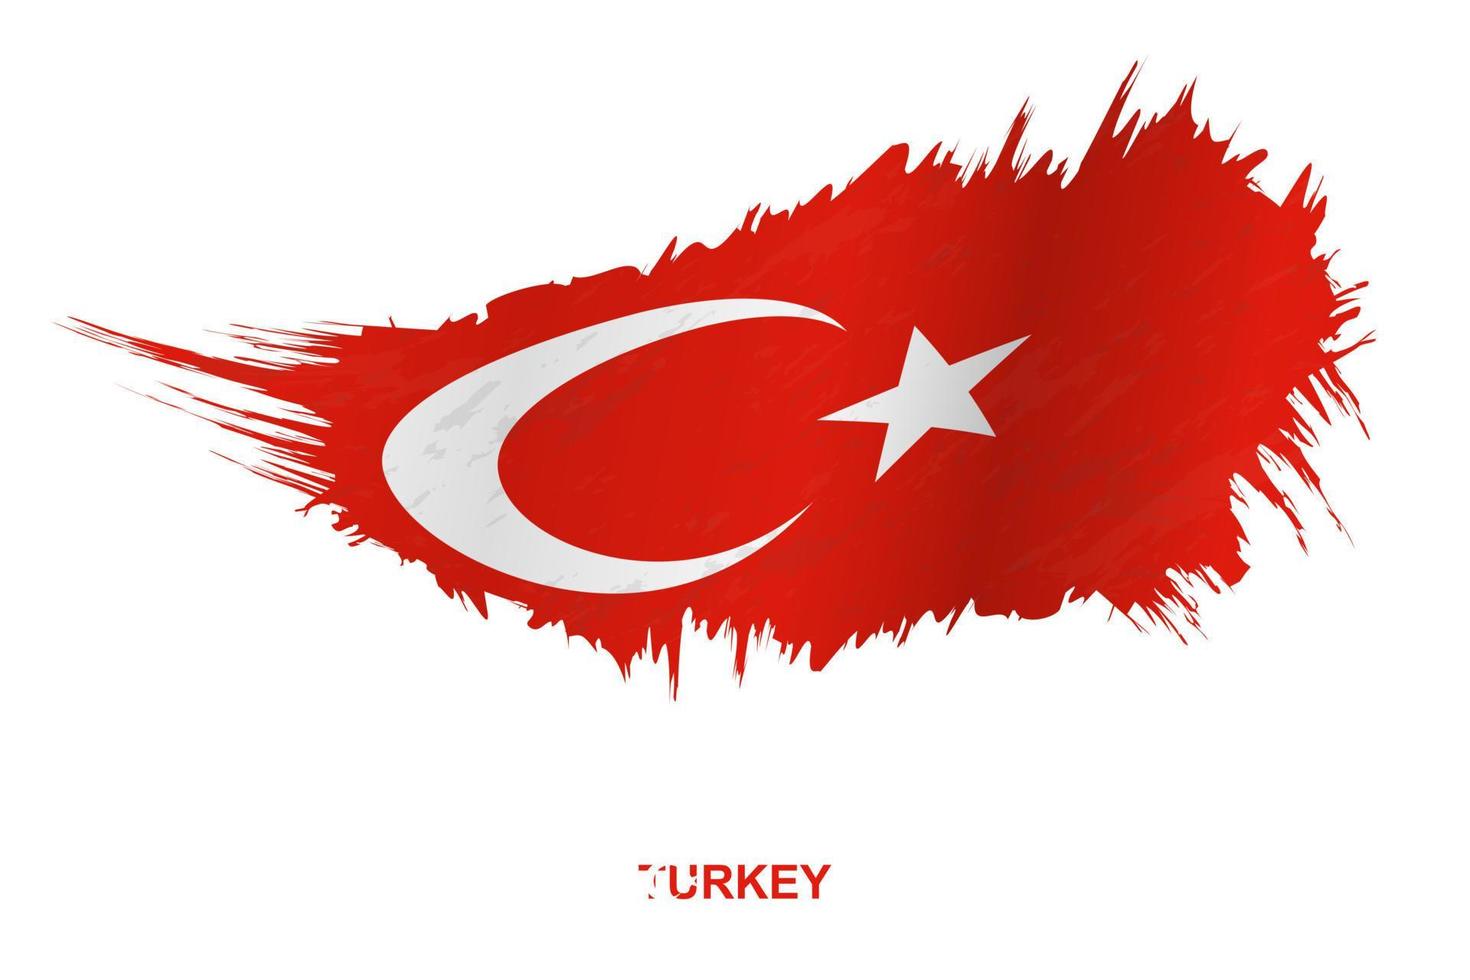 bandeira da Turquia em estilo grunge com efeito acenando. vetor